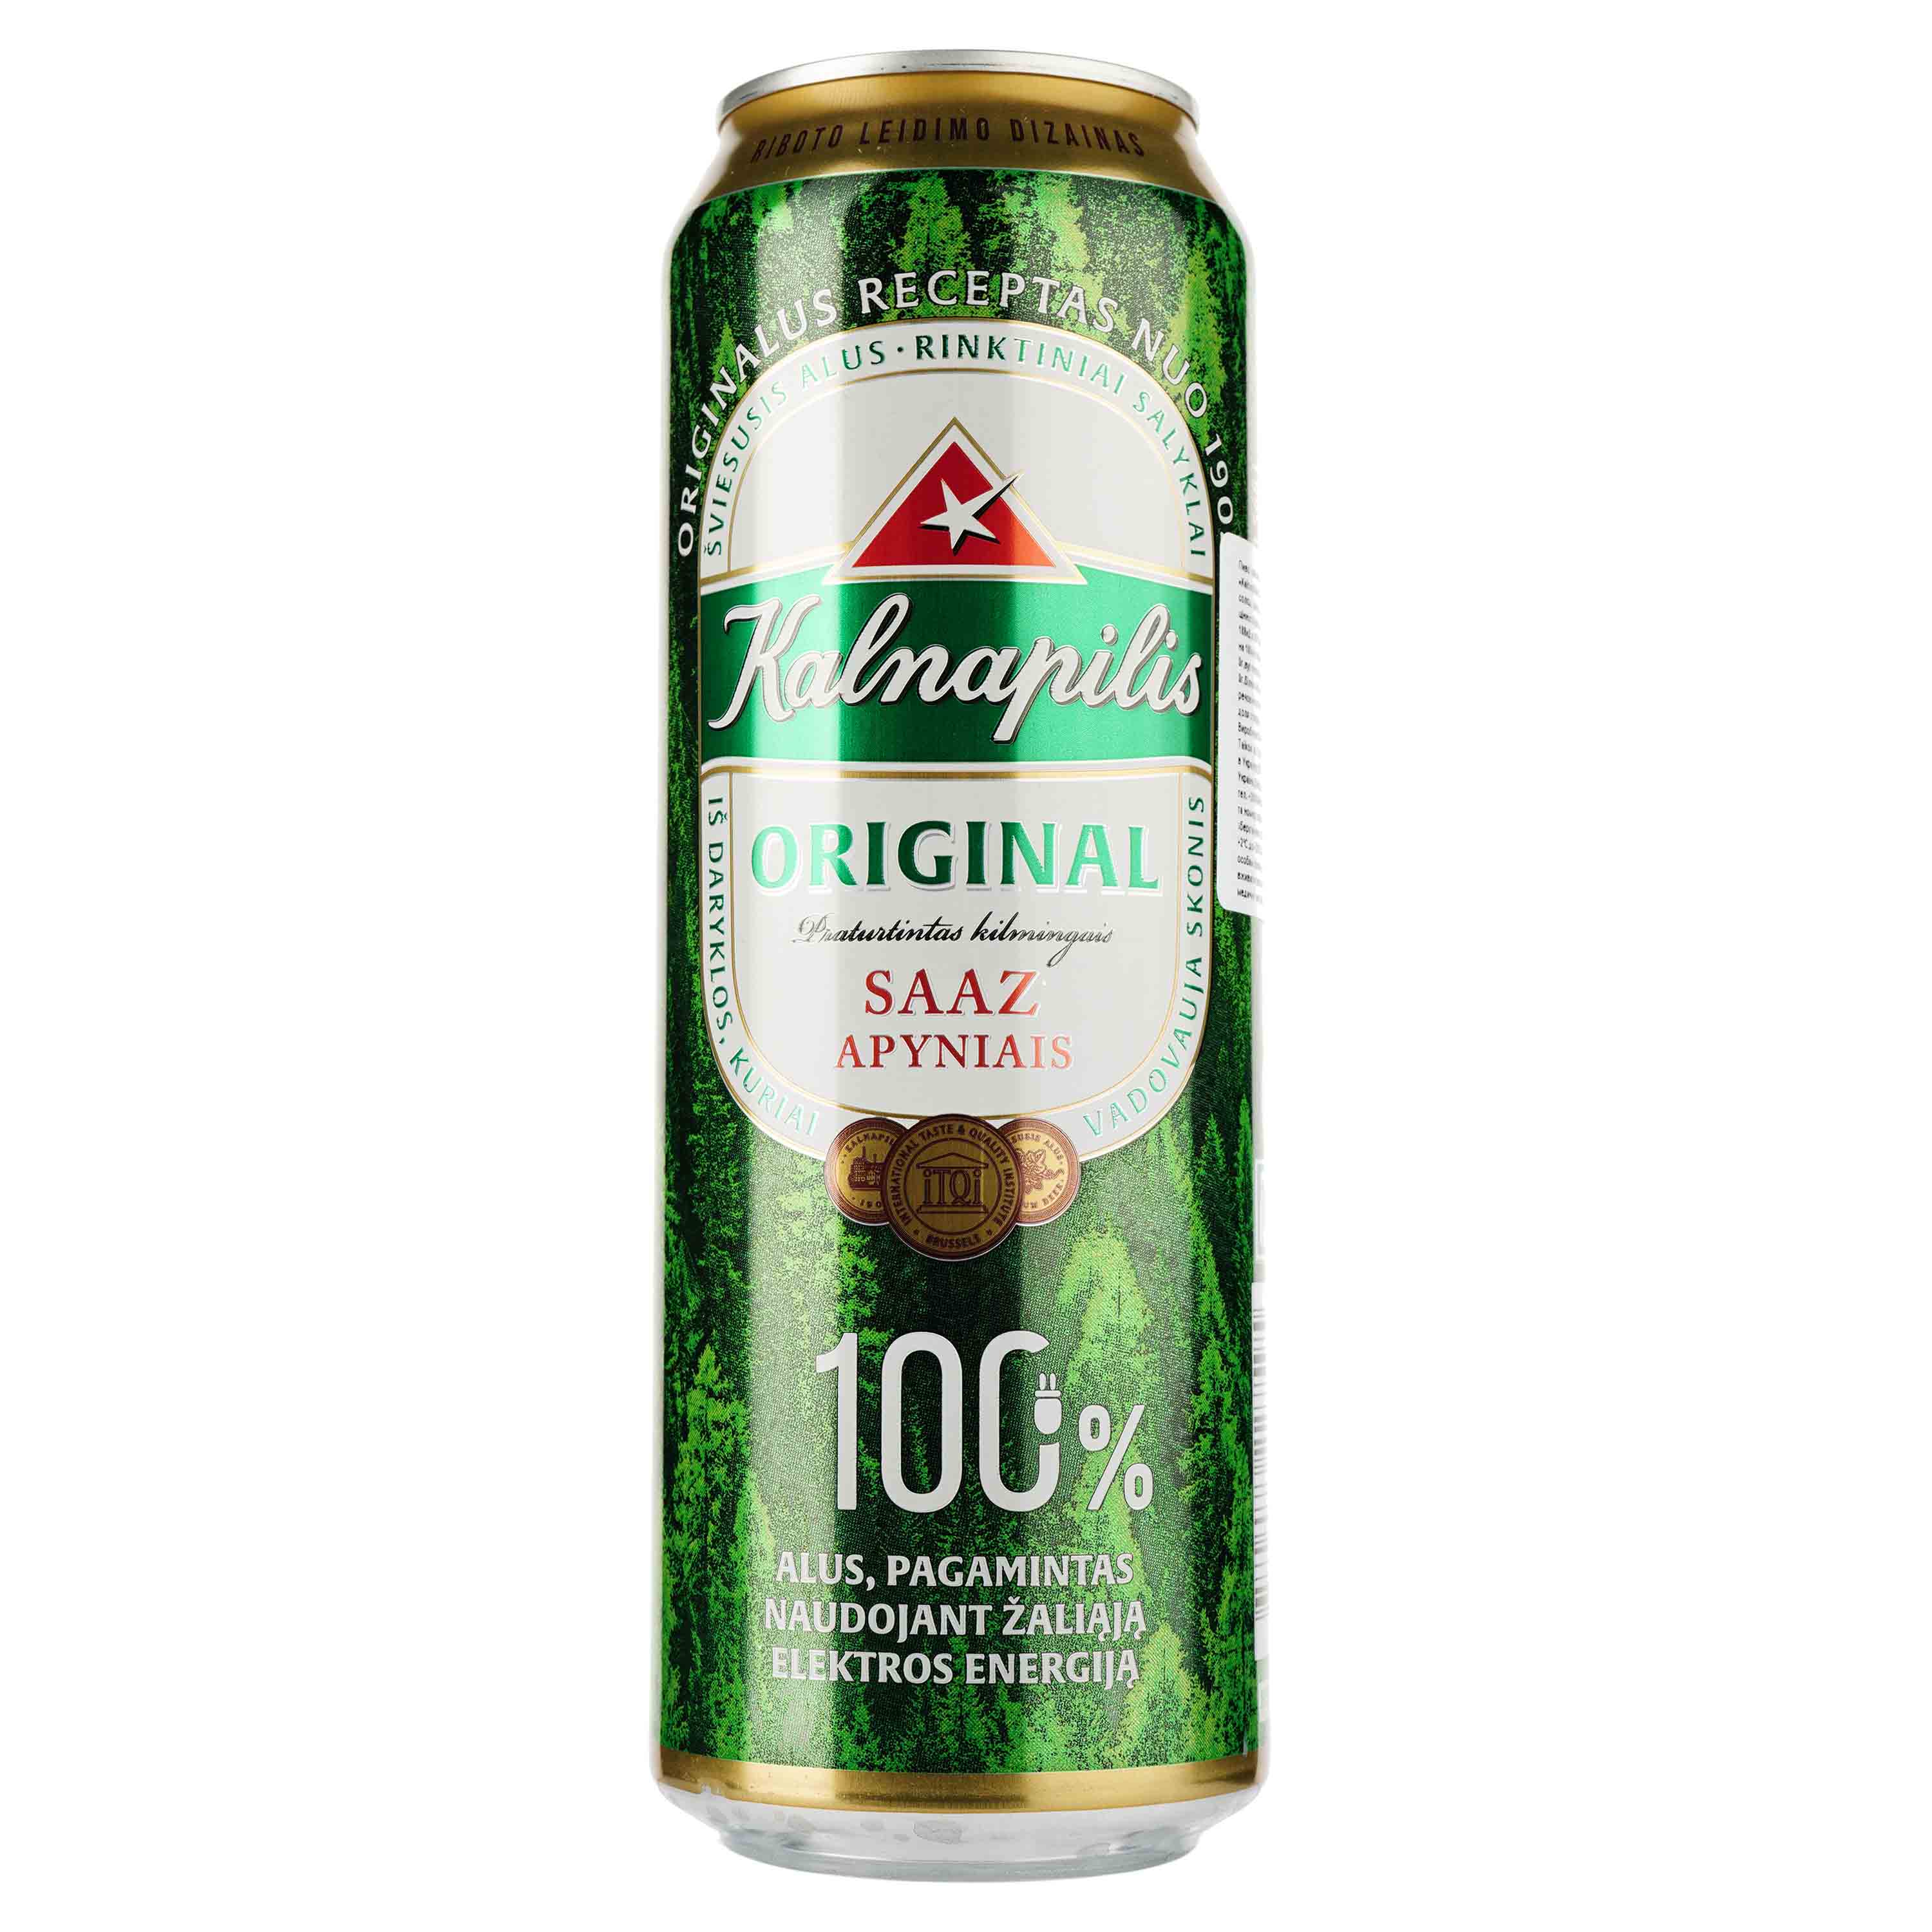 Пиво Kalnapilis Original, светлое, фильтрованное, 5%, ж/б, 0,568 л - фото 1